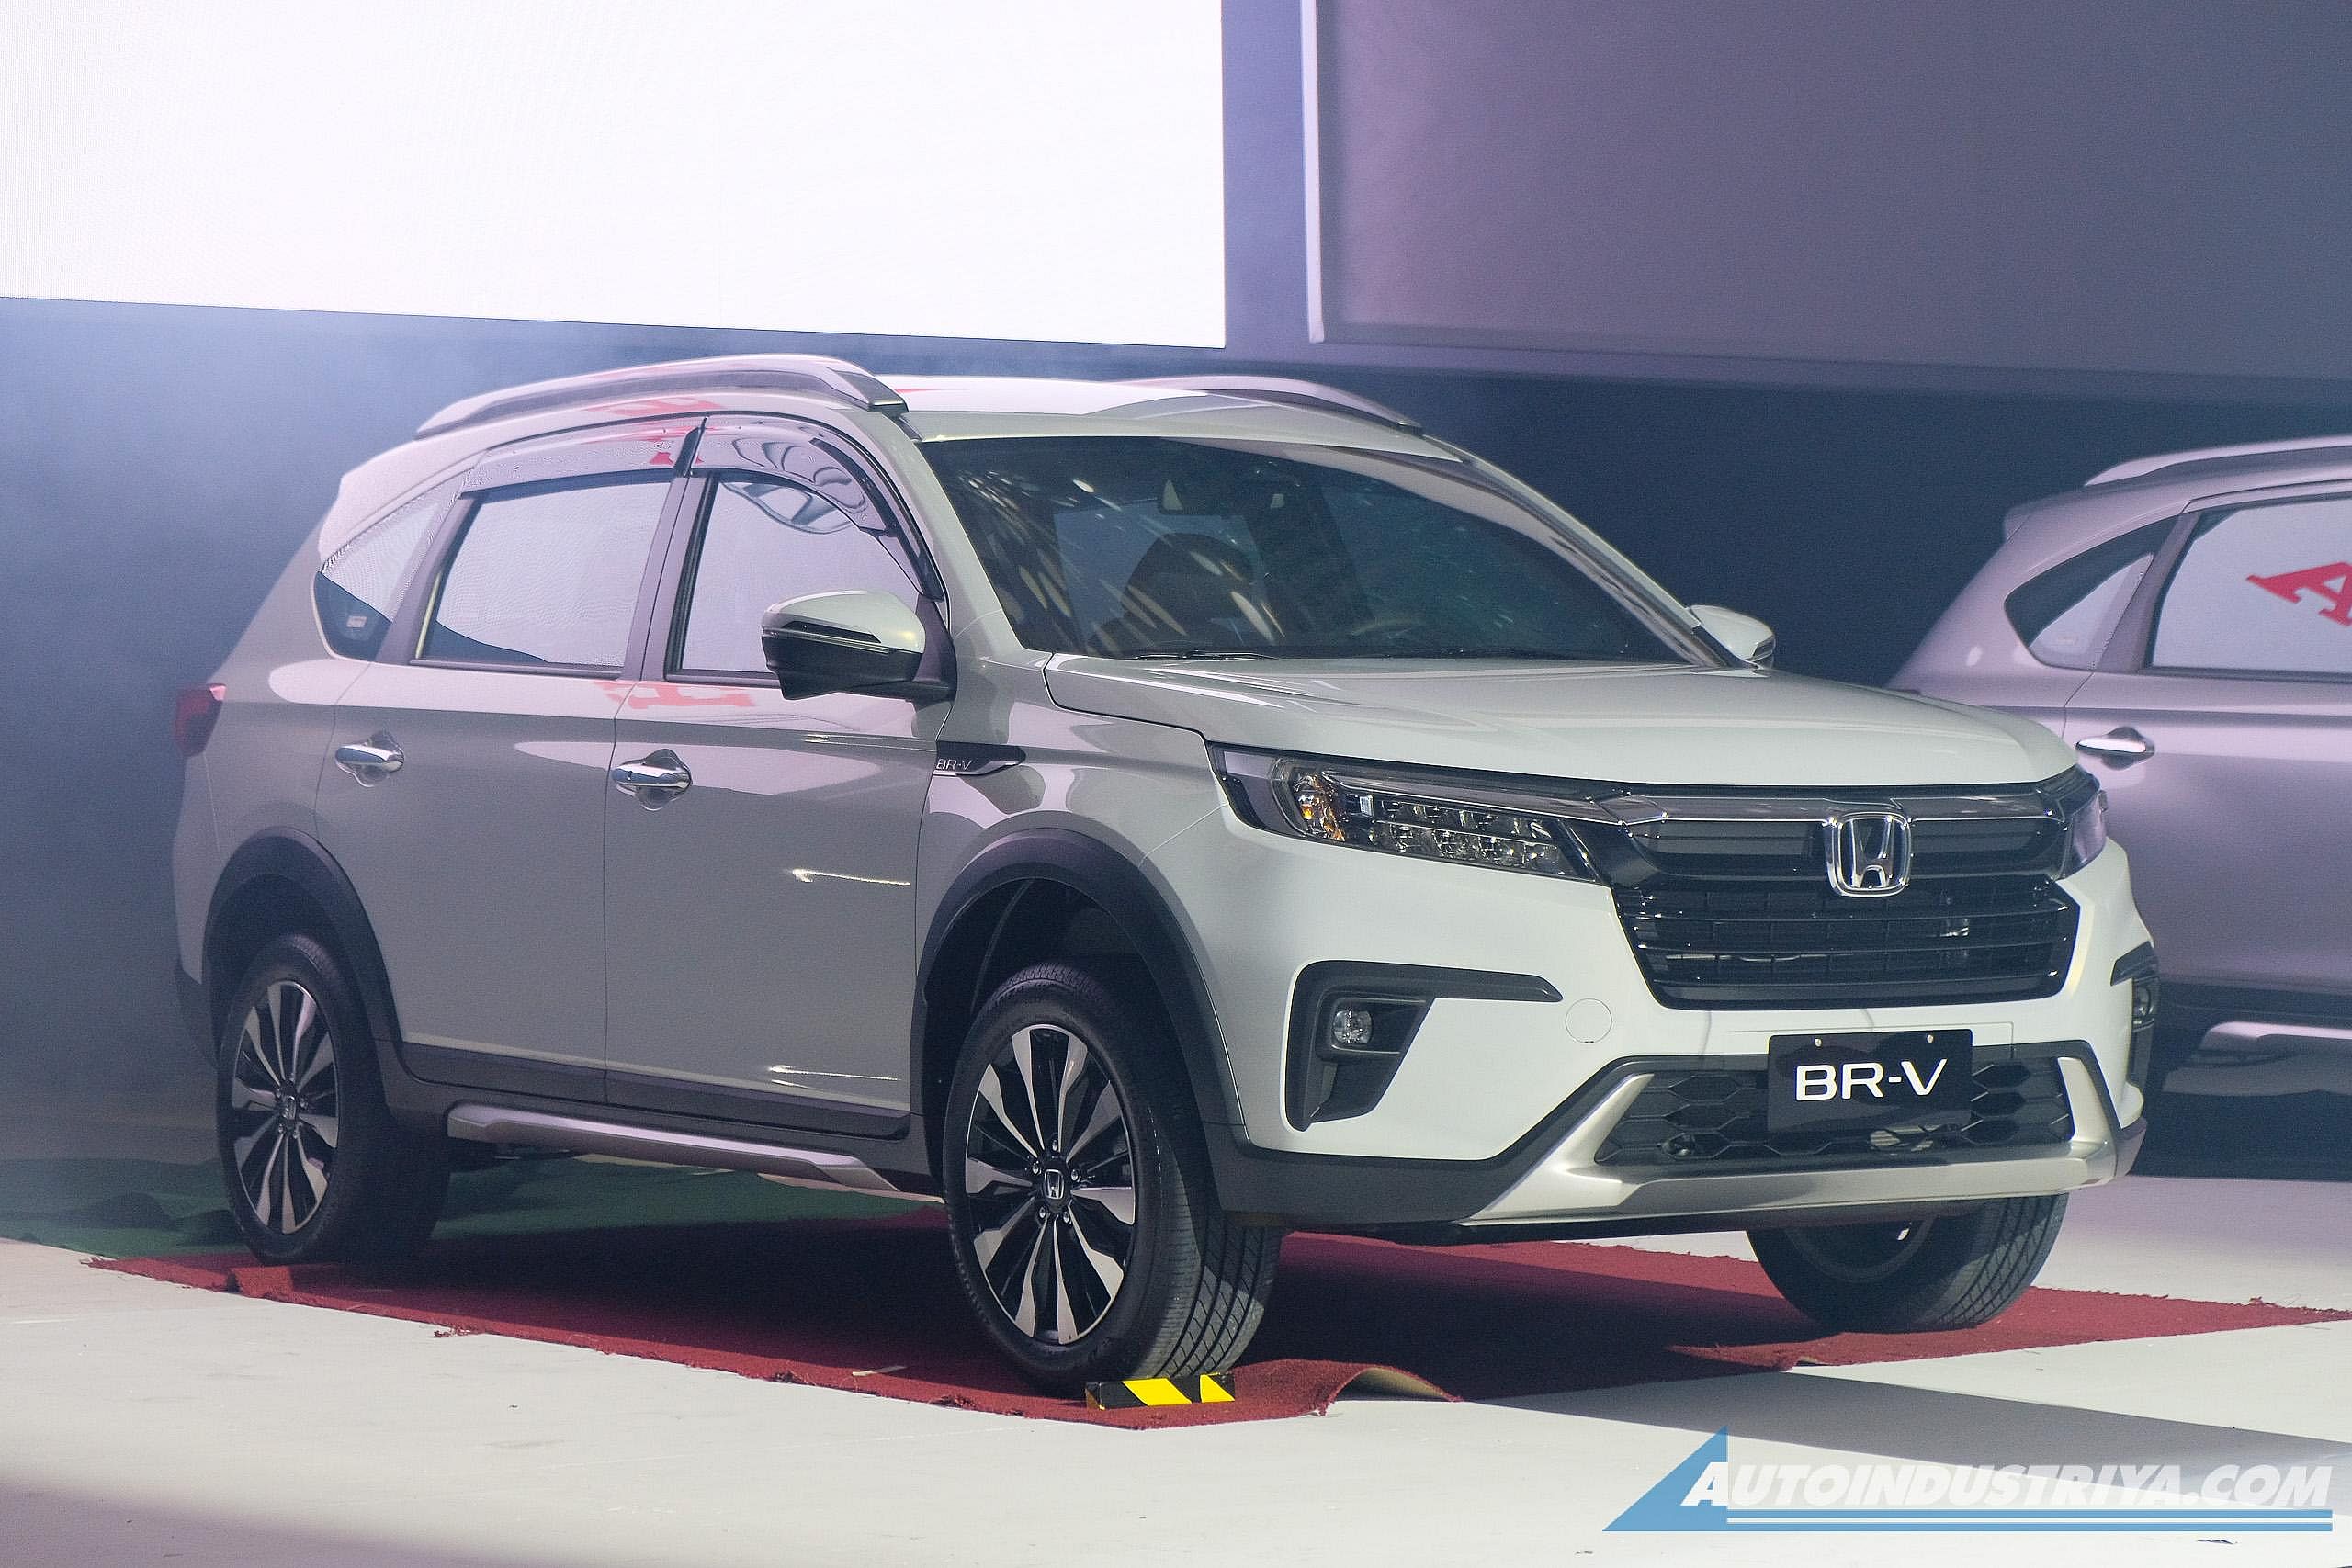 Honda BRV mới chốt giá từ 440 triệu đồng